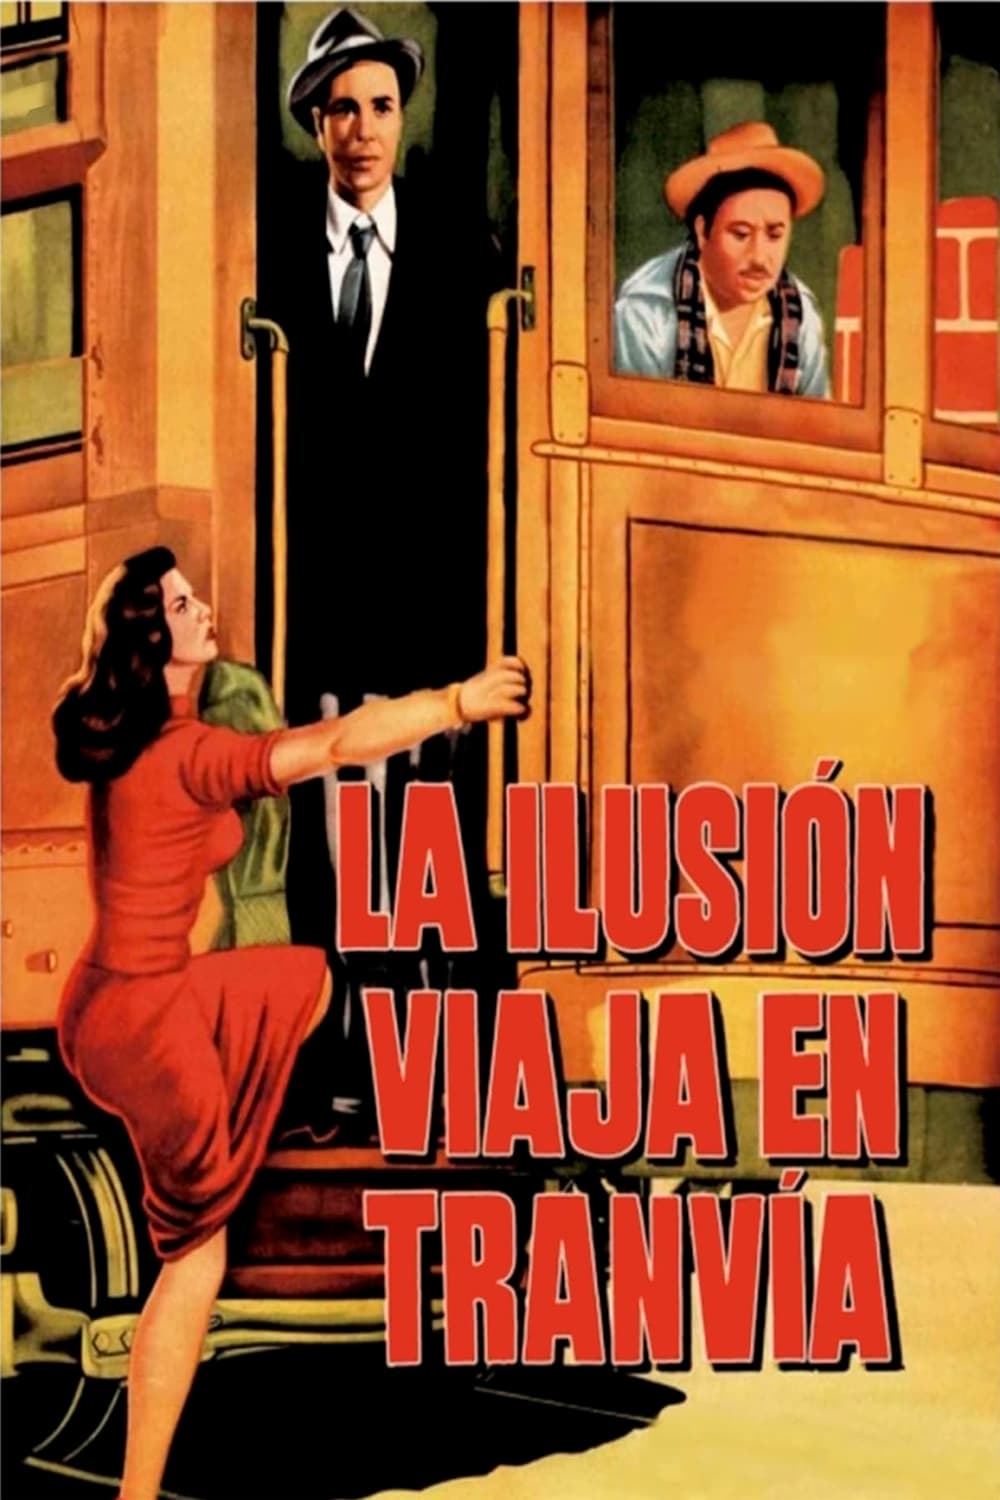 Die Illusion fährt mit der Straßenbahn (1954)